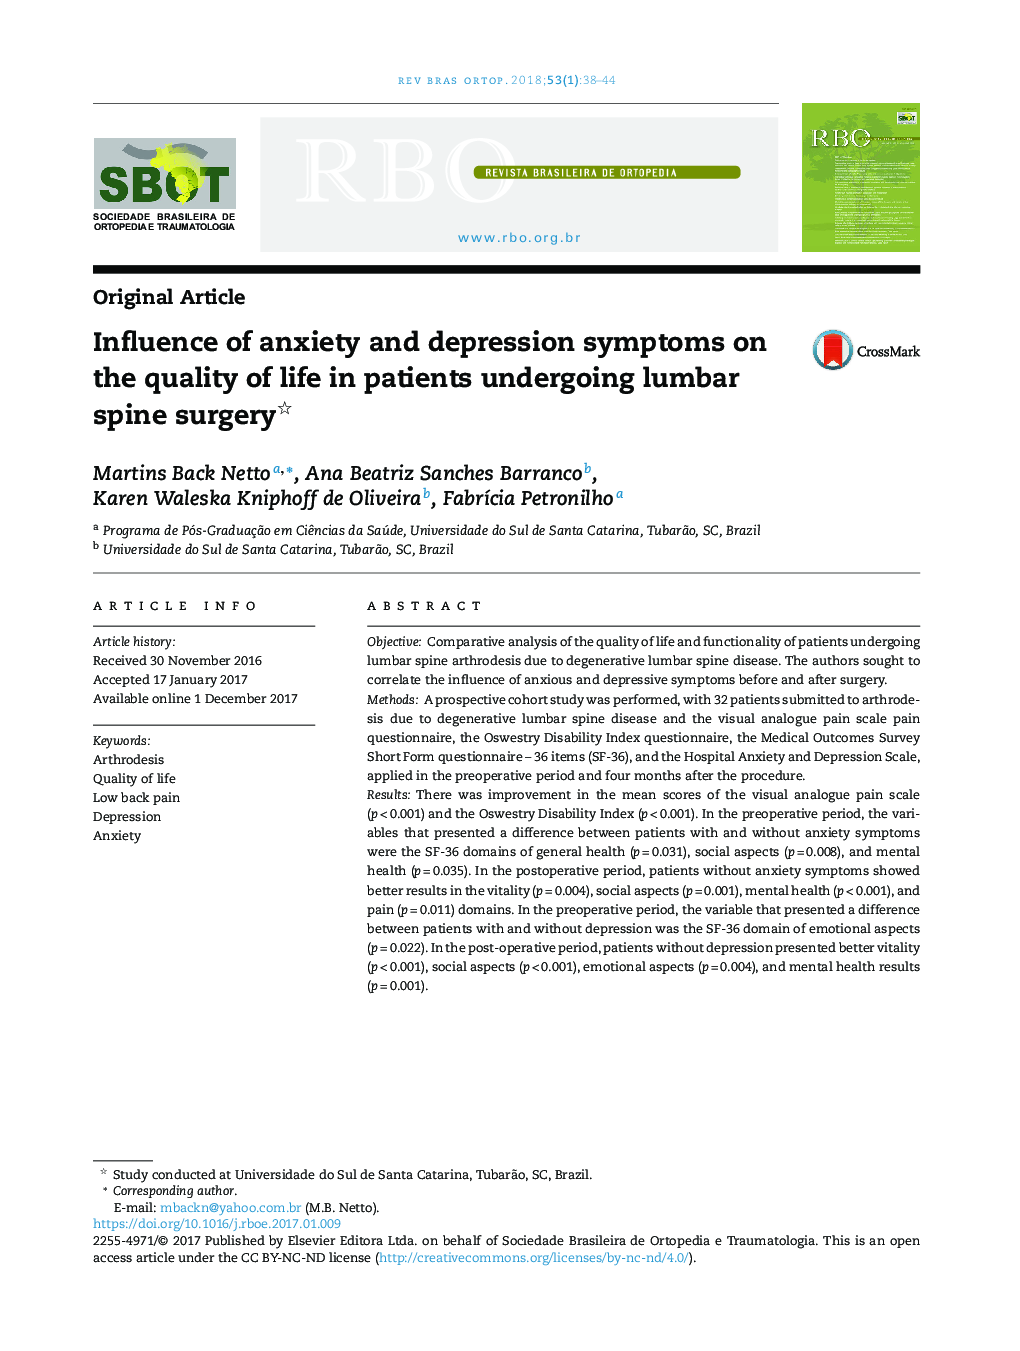 تأثیر علائم اضطراب و افسردگی بر کیفیت زندگی بیماران تحت عمل جراحی ستون فقرات کمری 